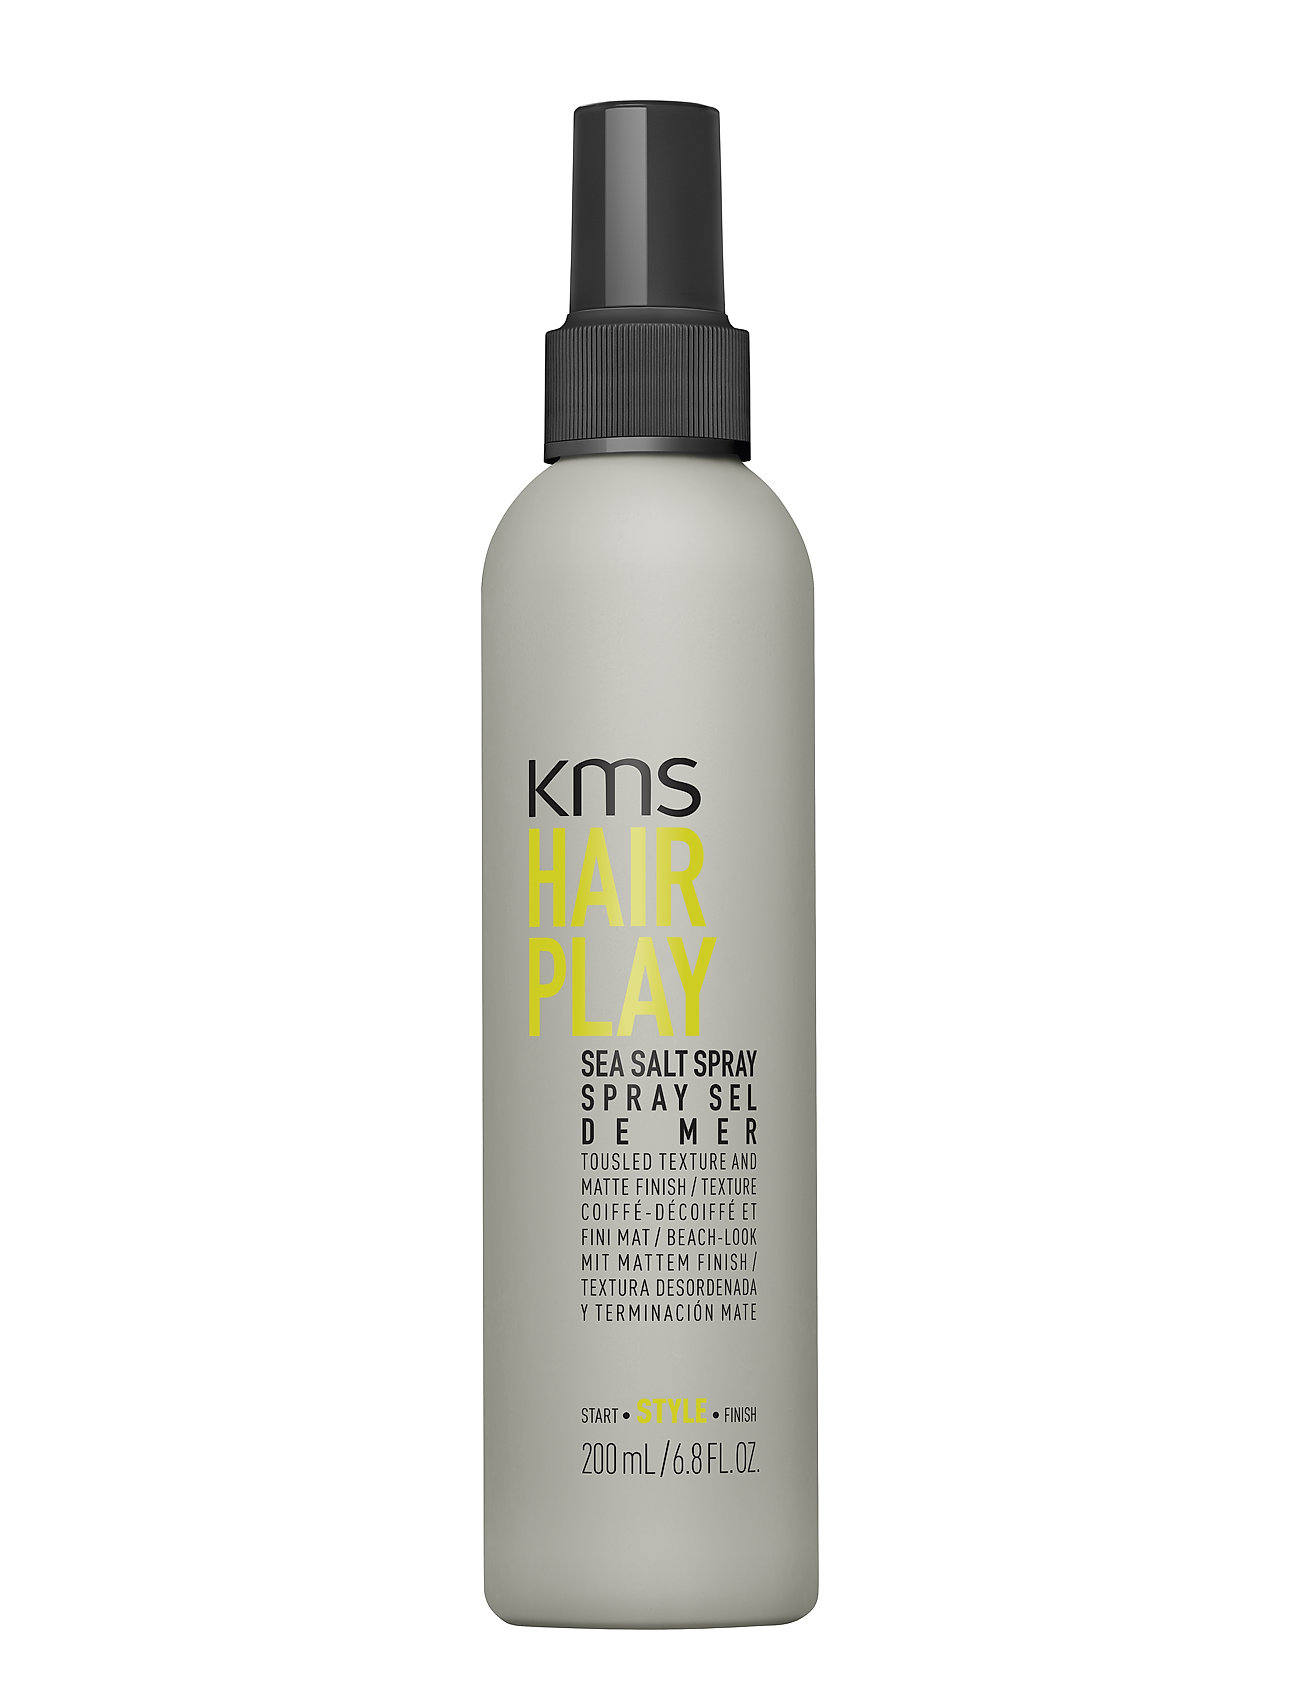 "KMS Hair" "Hair Play Sea Salt Spray Beauty Women Hair Styling Nude KMS